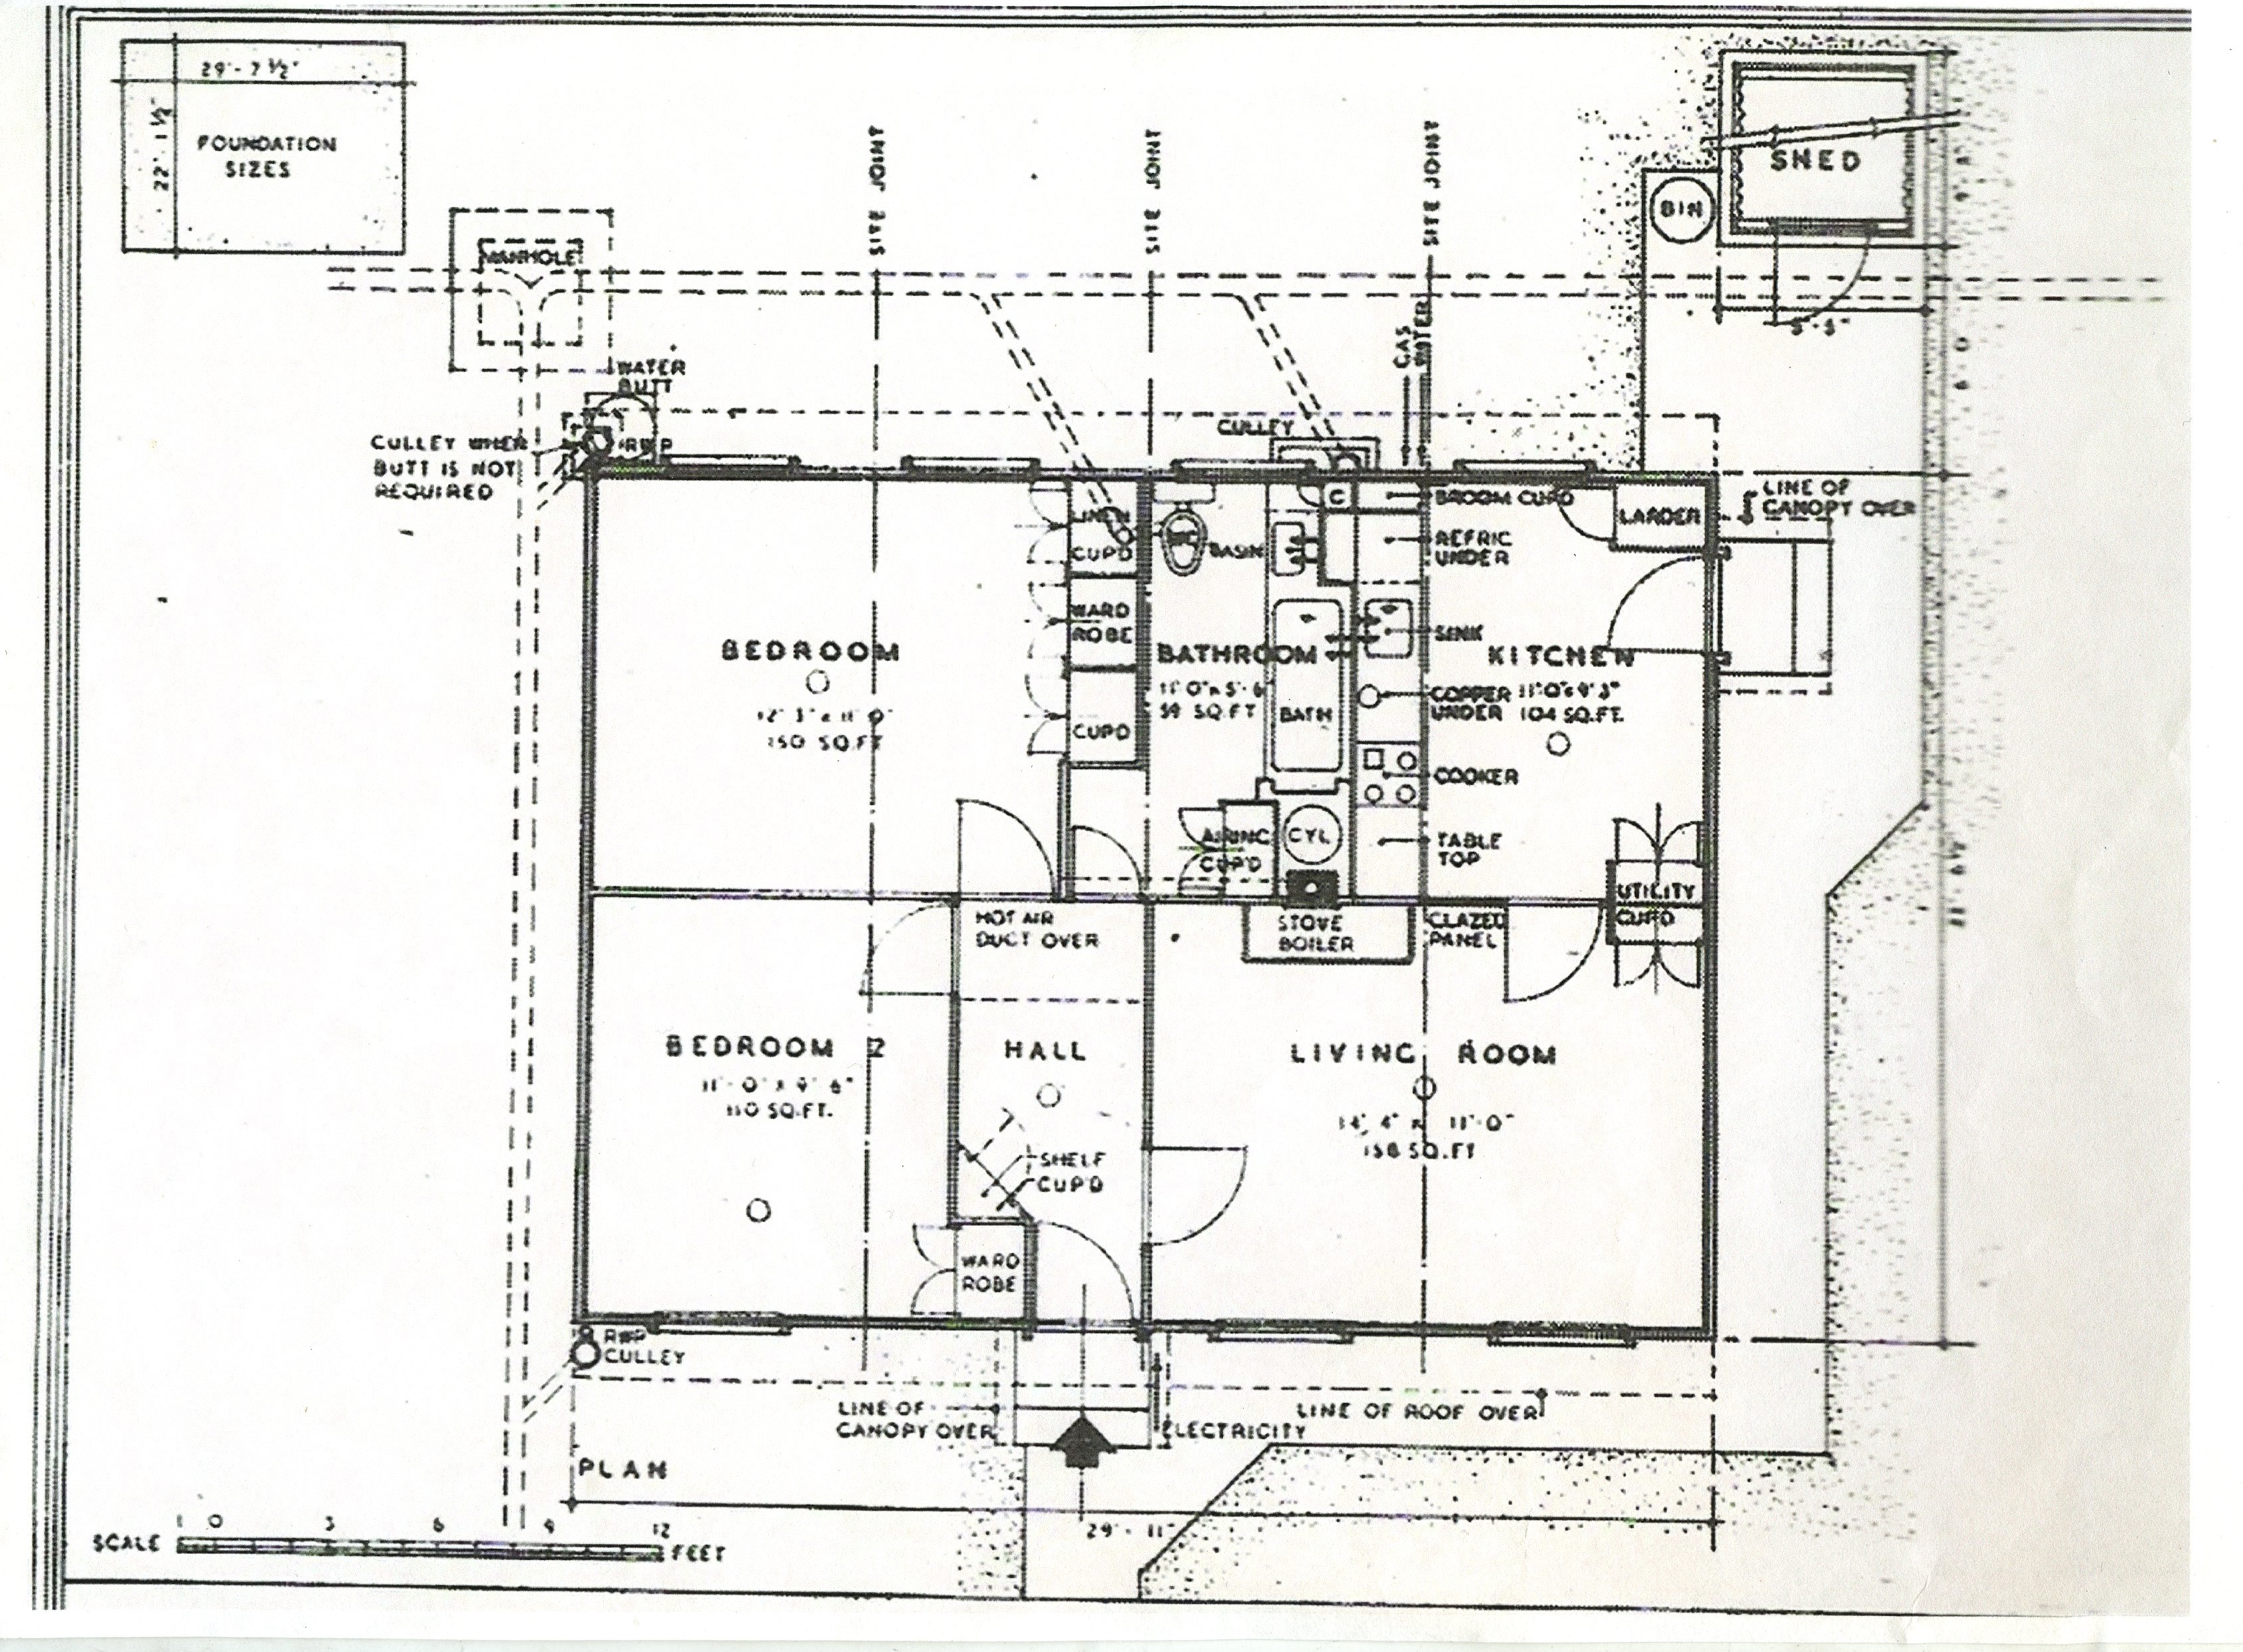 Floorplan of a central entrance prefab